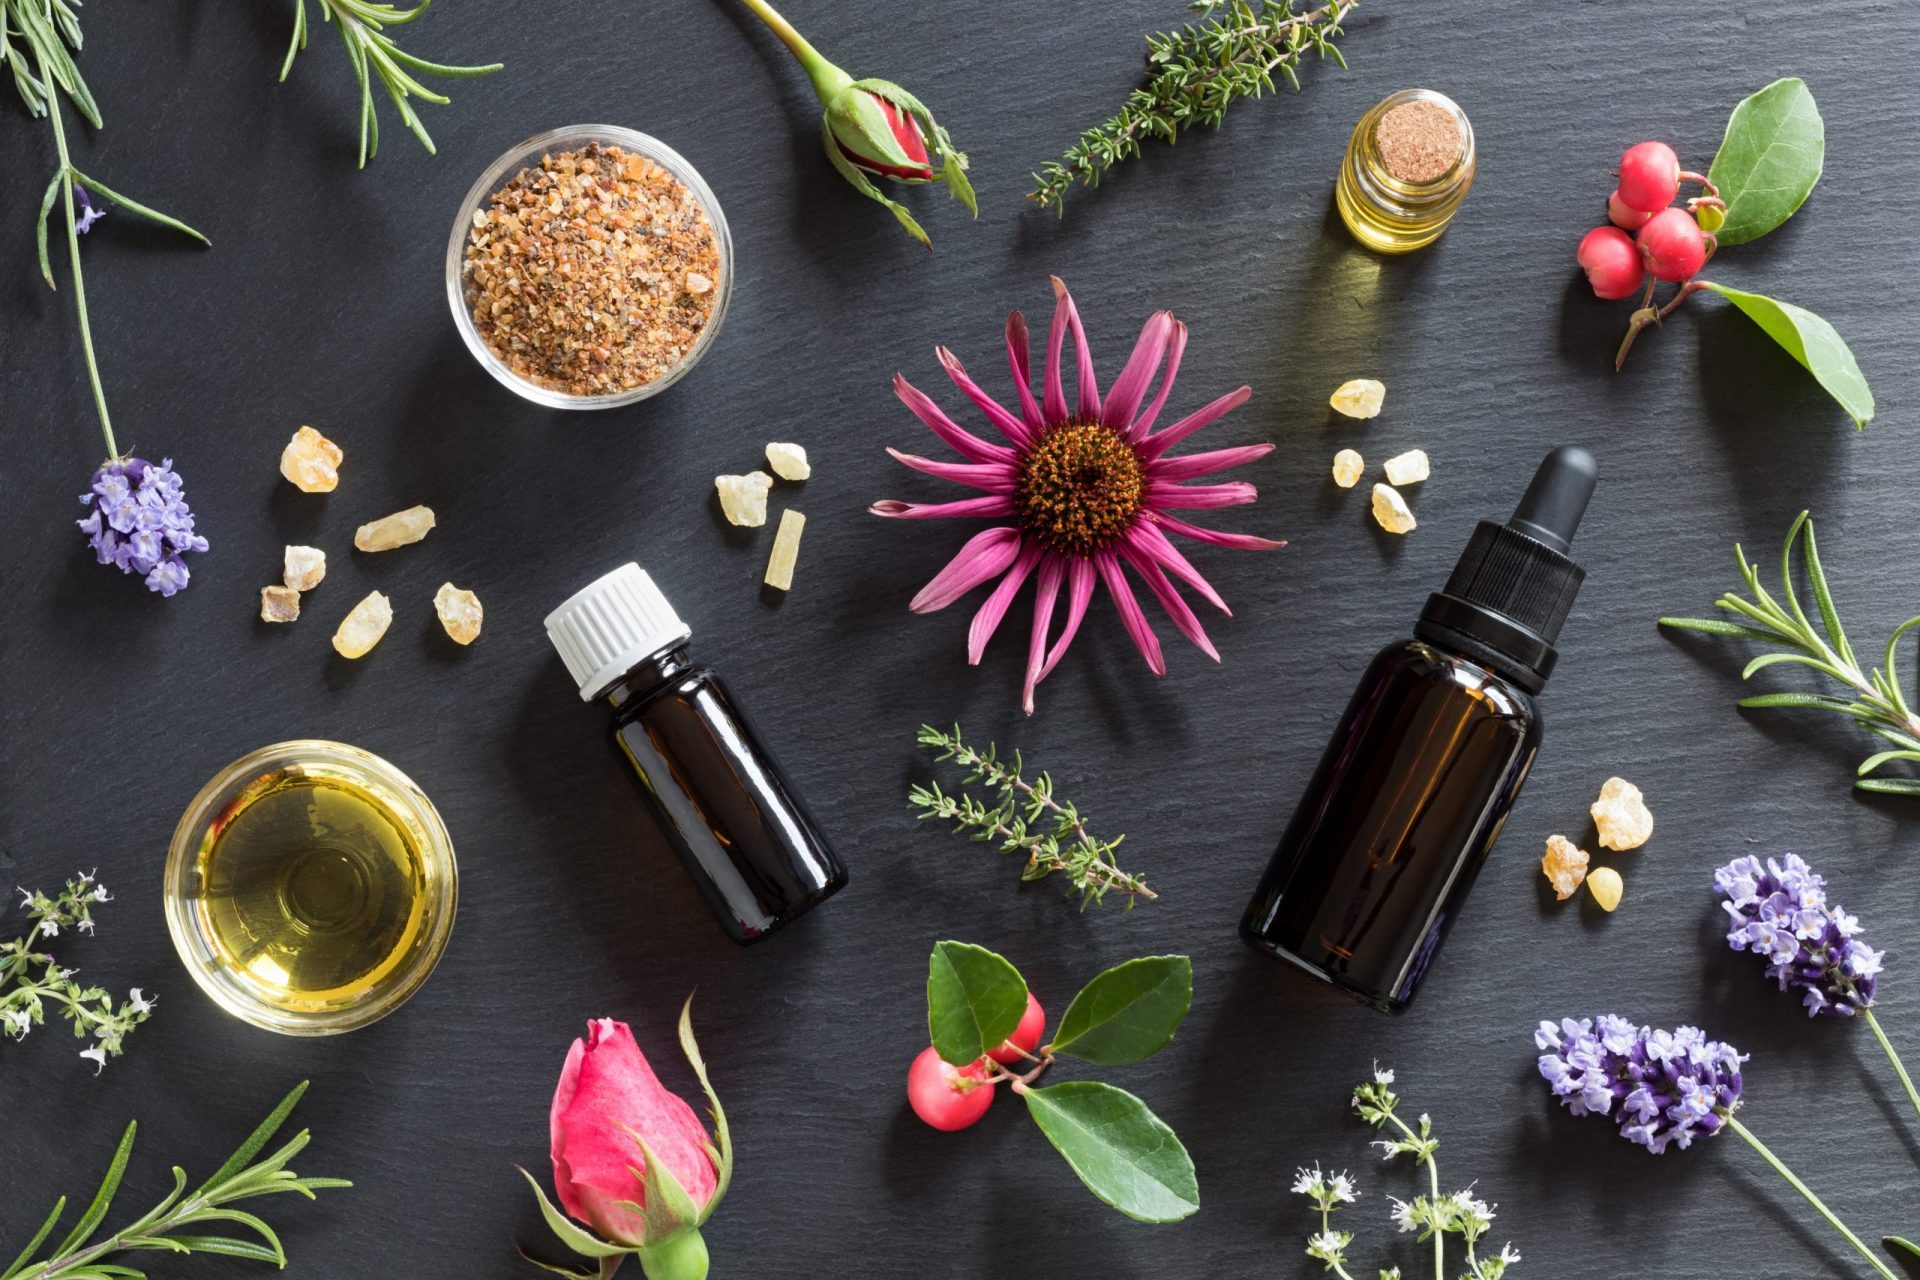 Spray » assainissant aux huiles essentielles - Académie de massage